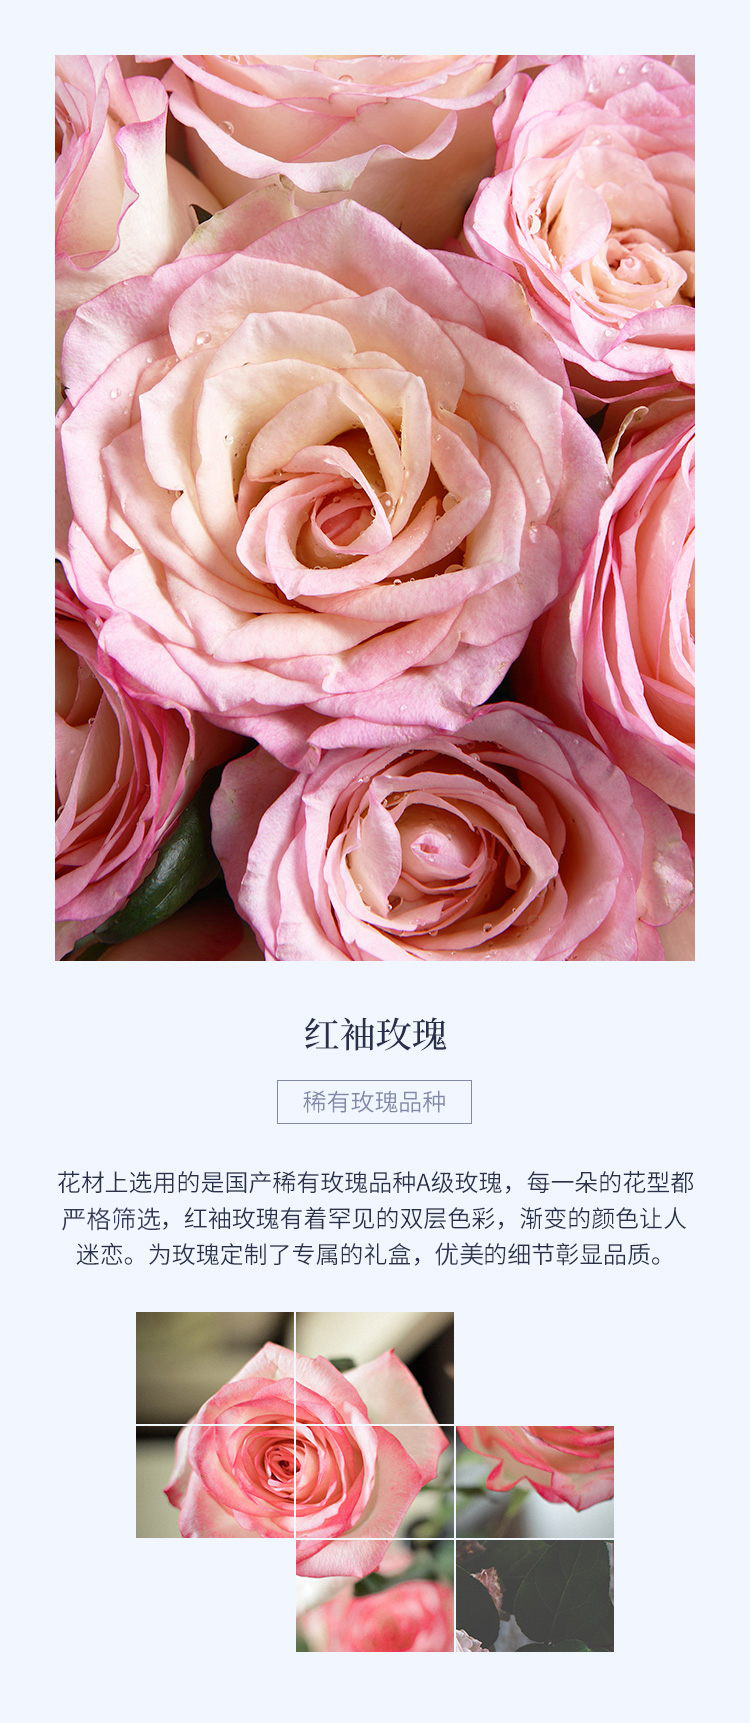 花礼/天使之吻/设计师臻选白粉色玫瑰鲜花/七夕情人节求婚表白生日礼物鲜花/当日达